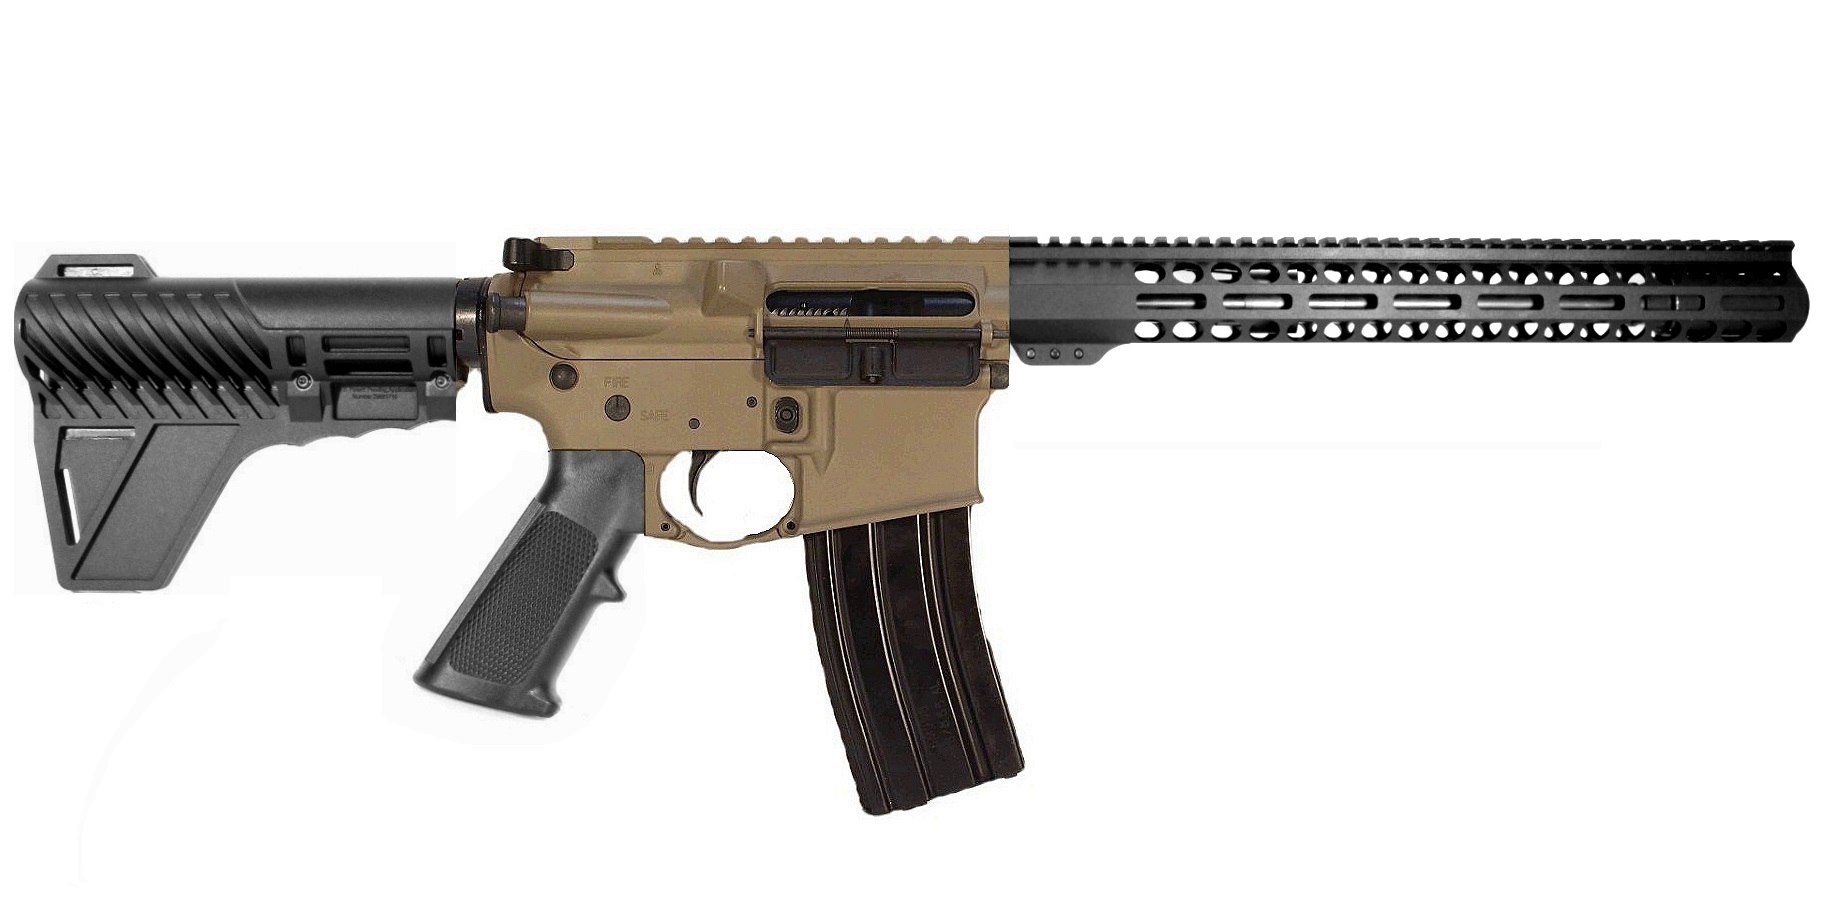 12.5 inch 300 Blackout AR Pistol | Fast Shipping | Lifetime Warranty